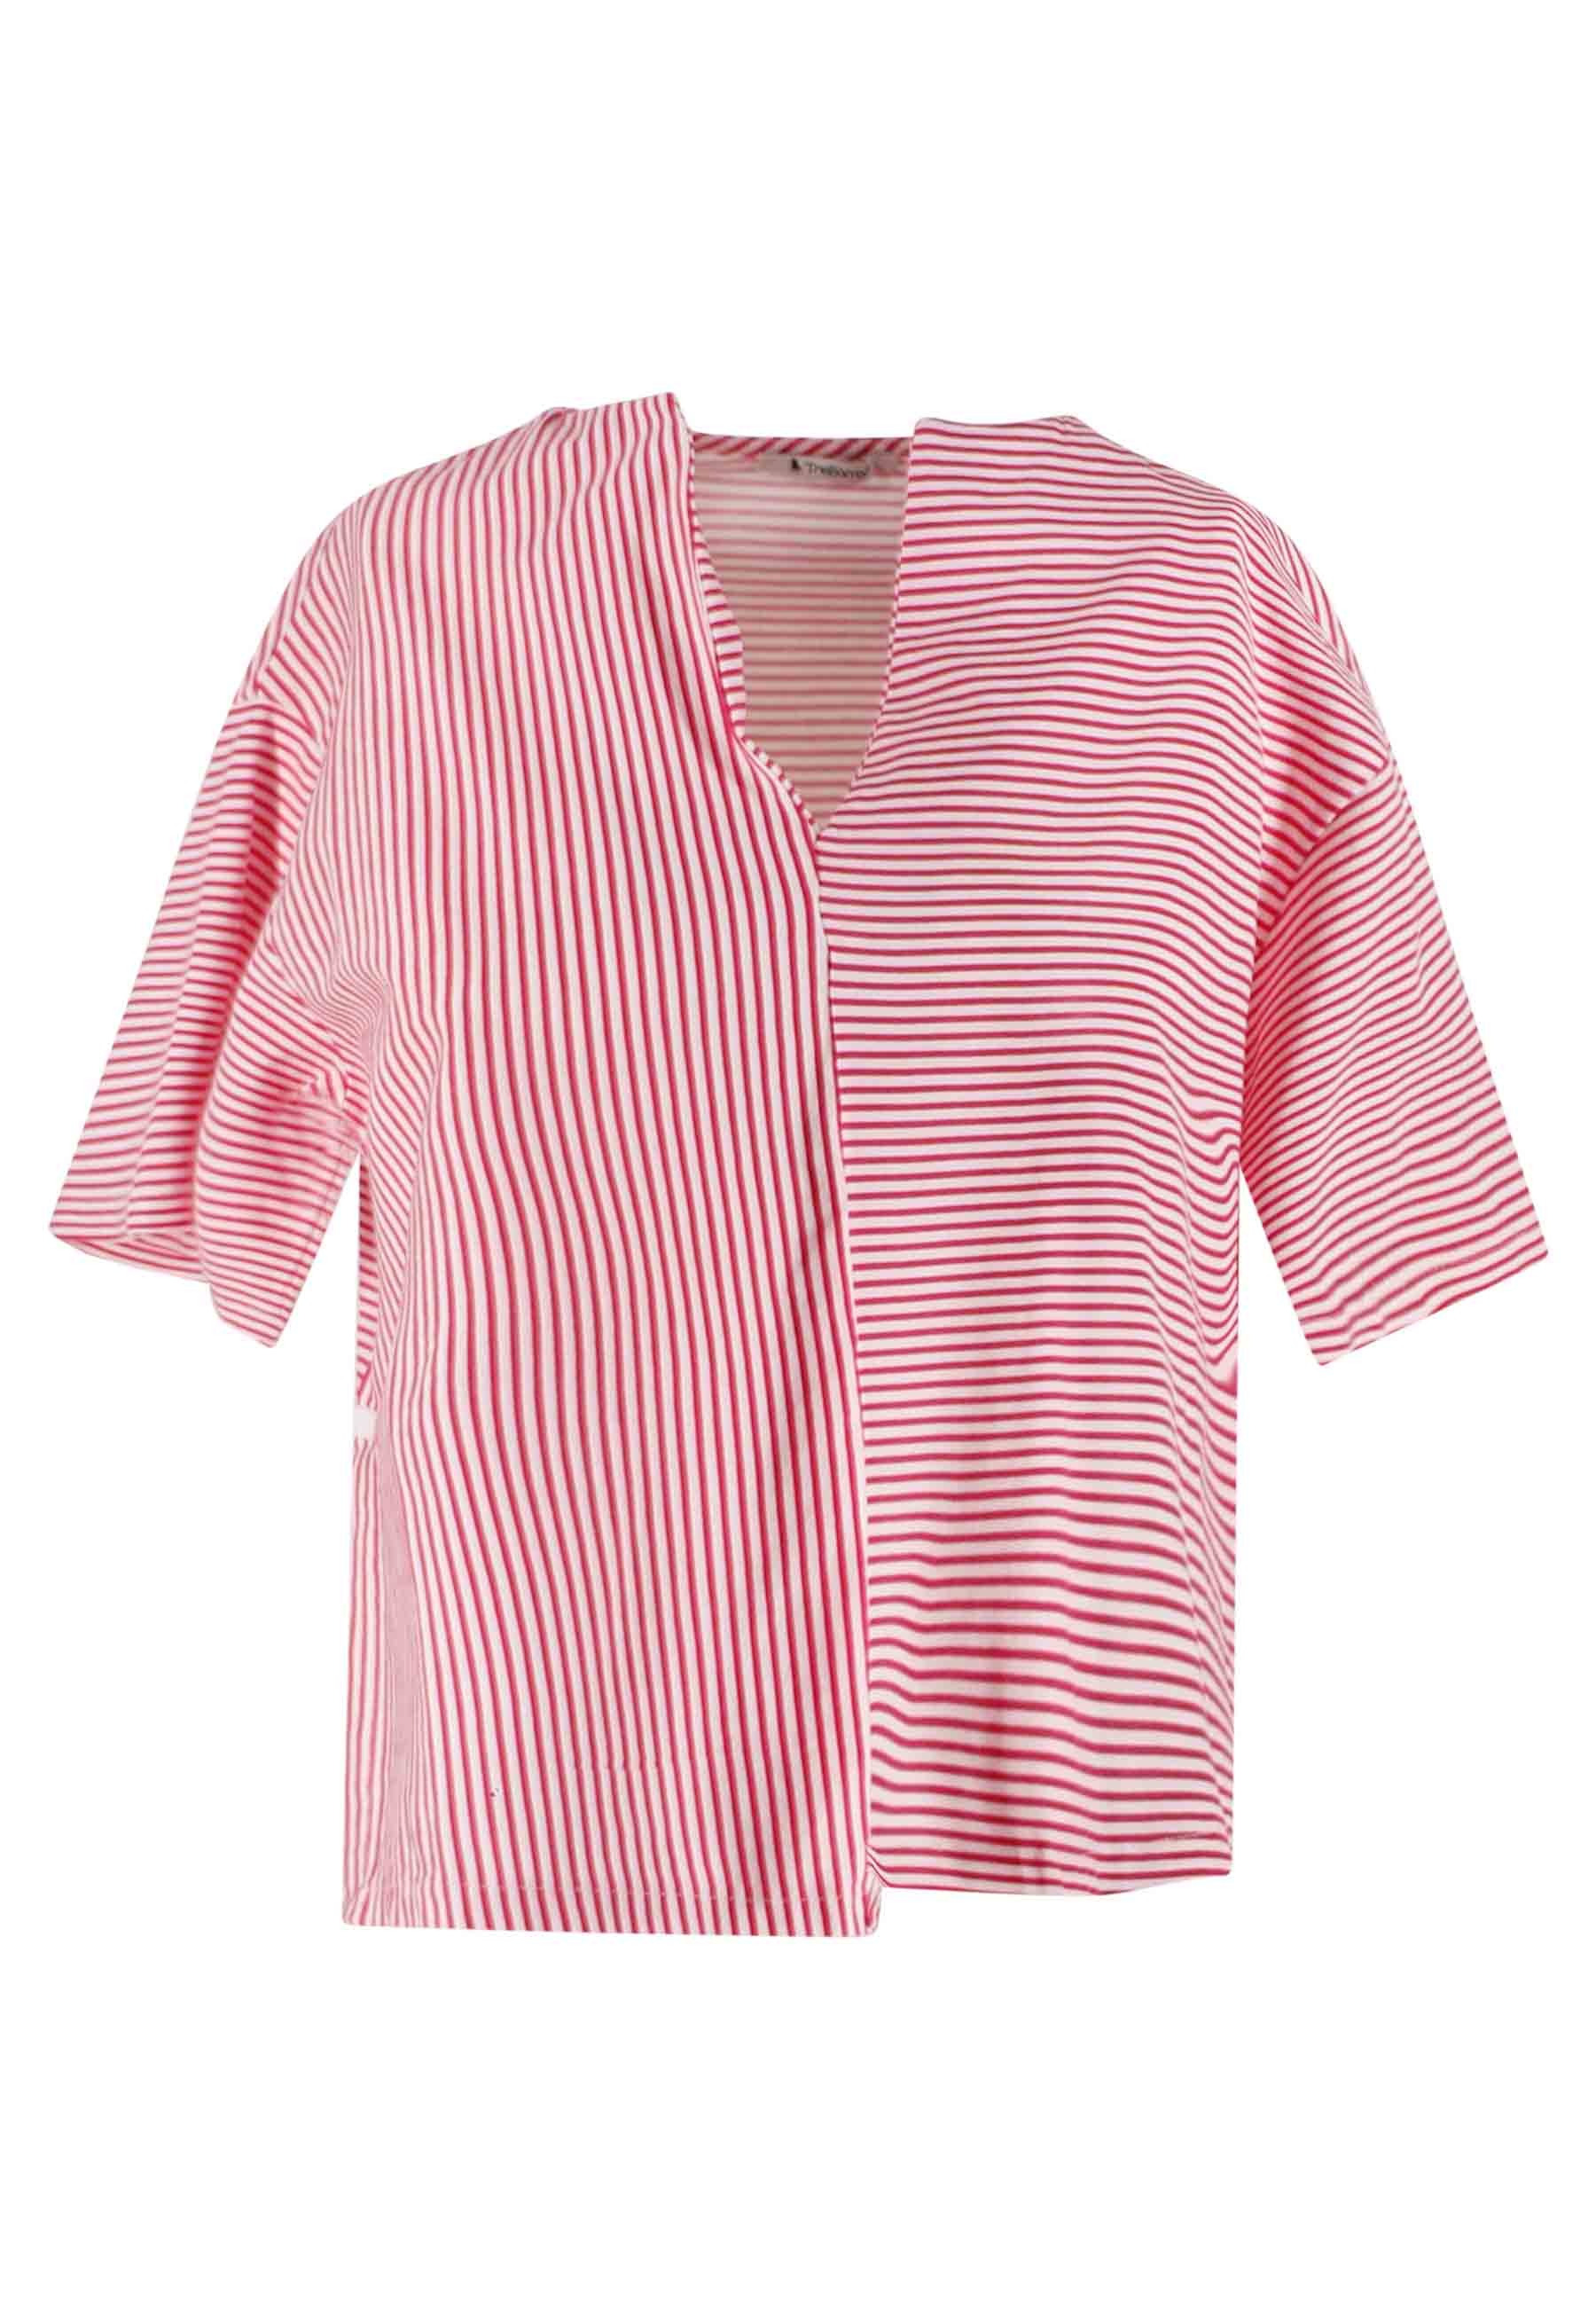 T-shirt donna Tita in cotone bianco e rosso a righe e scollo a V